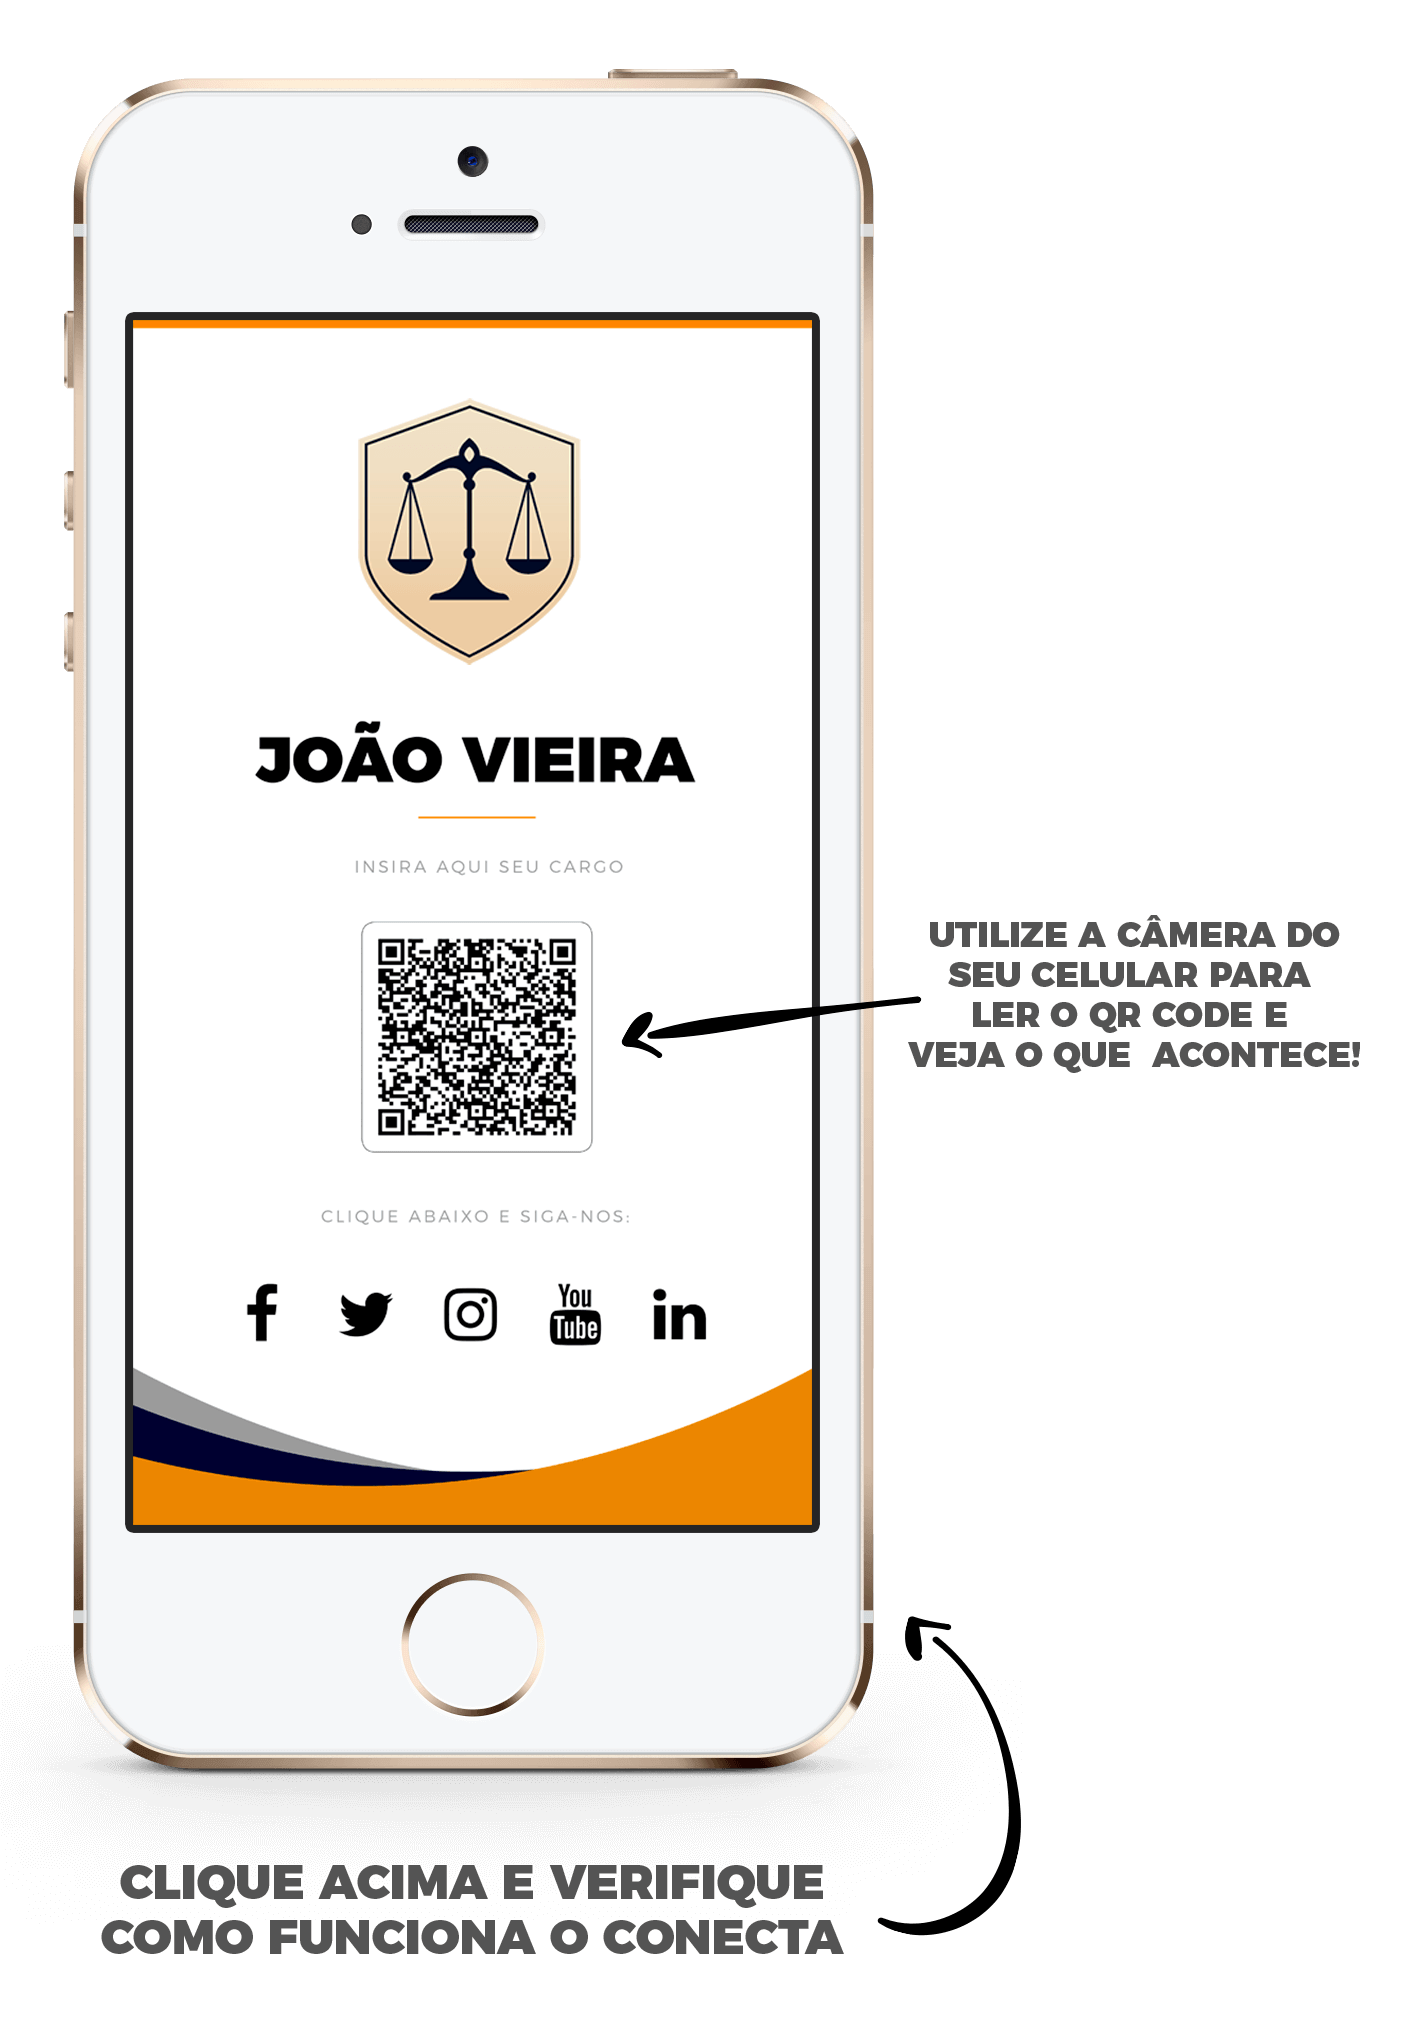 cartao de visita digital advogados - Cartão de visita digital para advogado - a nova tendência para conquistar clientes e gastar pouco!